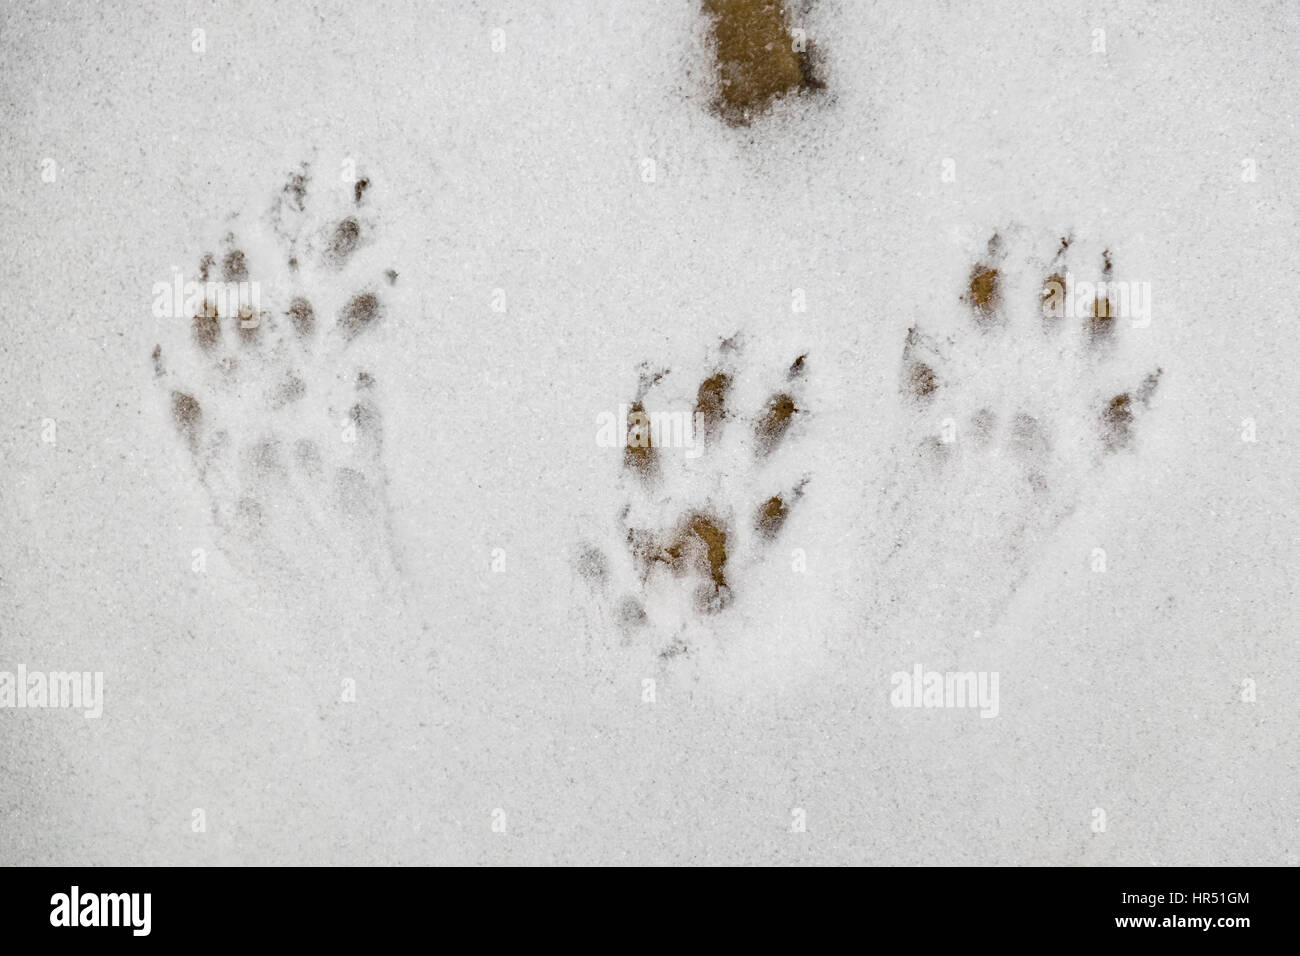 L'écureuil roux européen des empreintes de pas dans la neige Banque D'Images